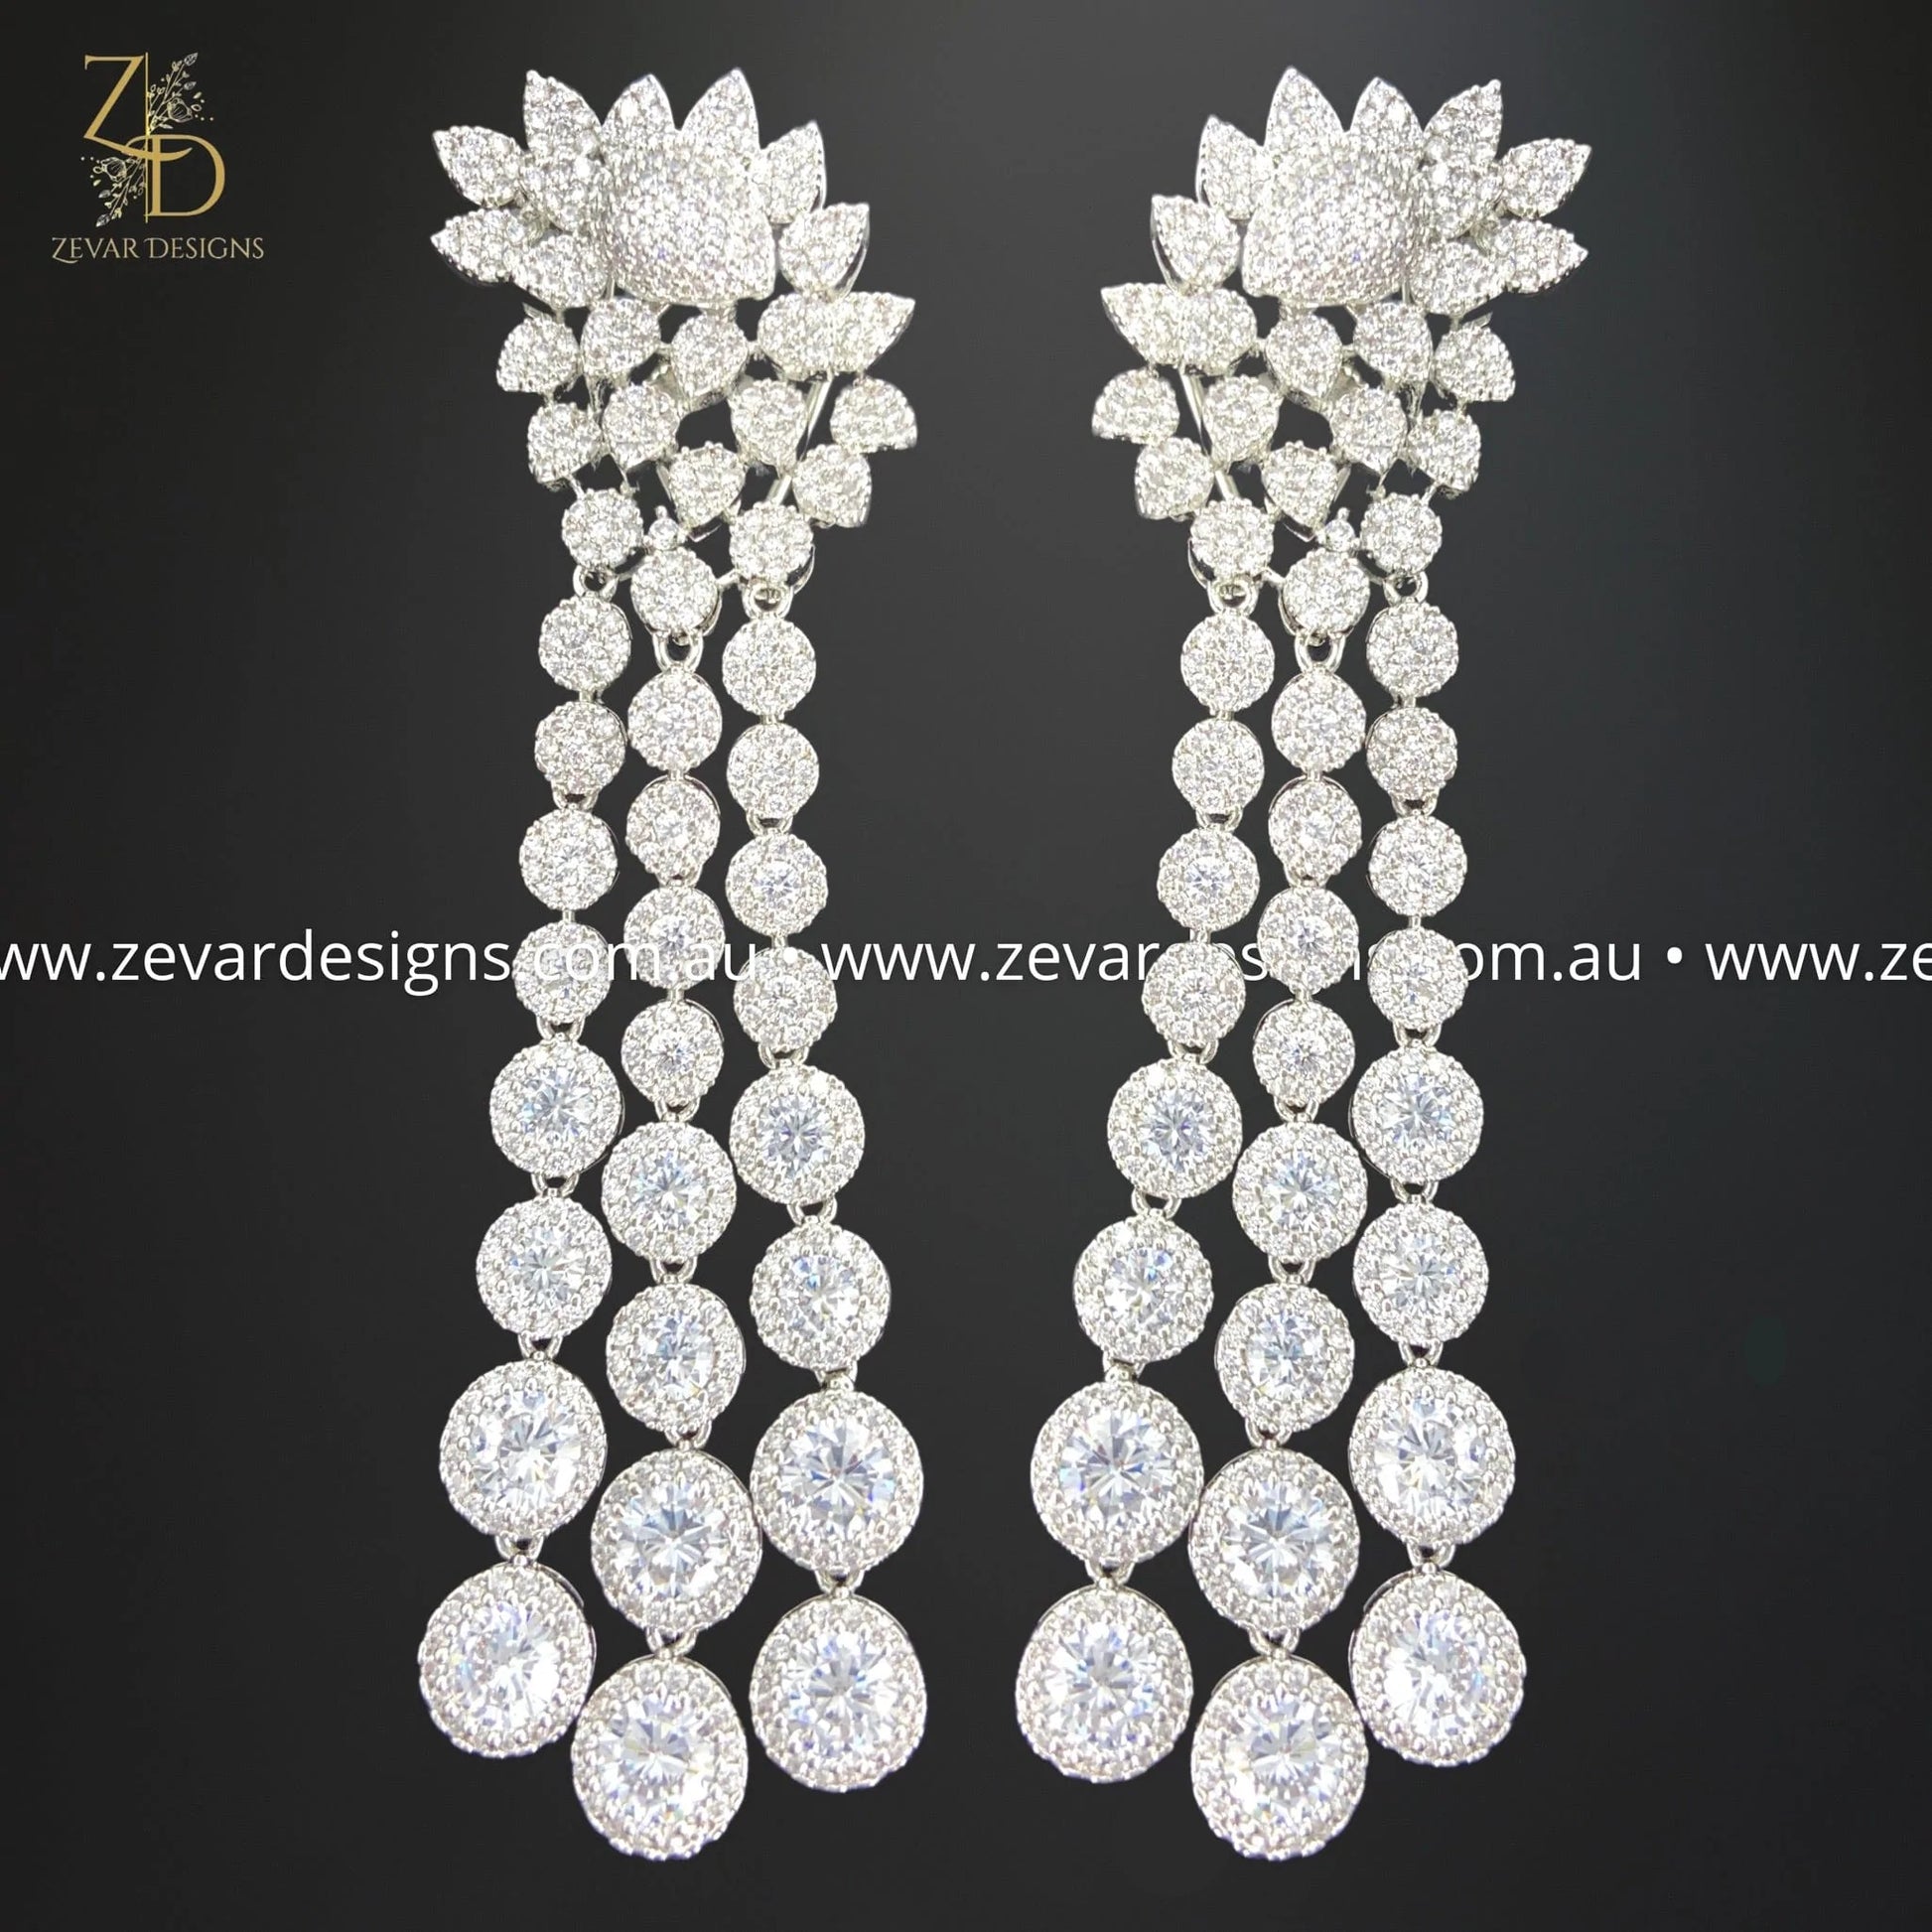 Zevar Designs Indo-Western Earrings AD/Zircon Earrings - White Rhodium